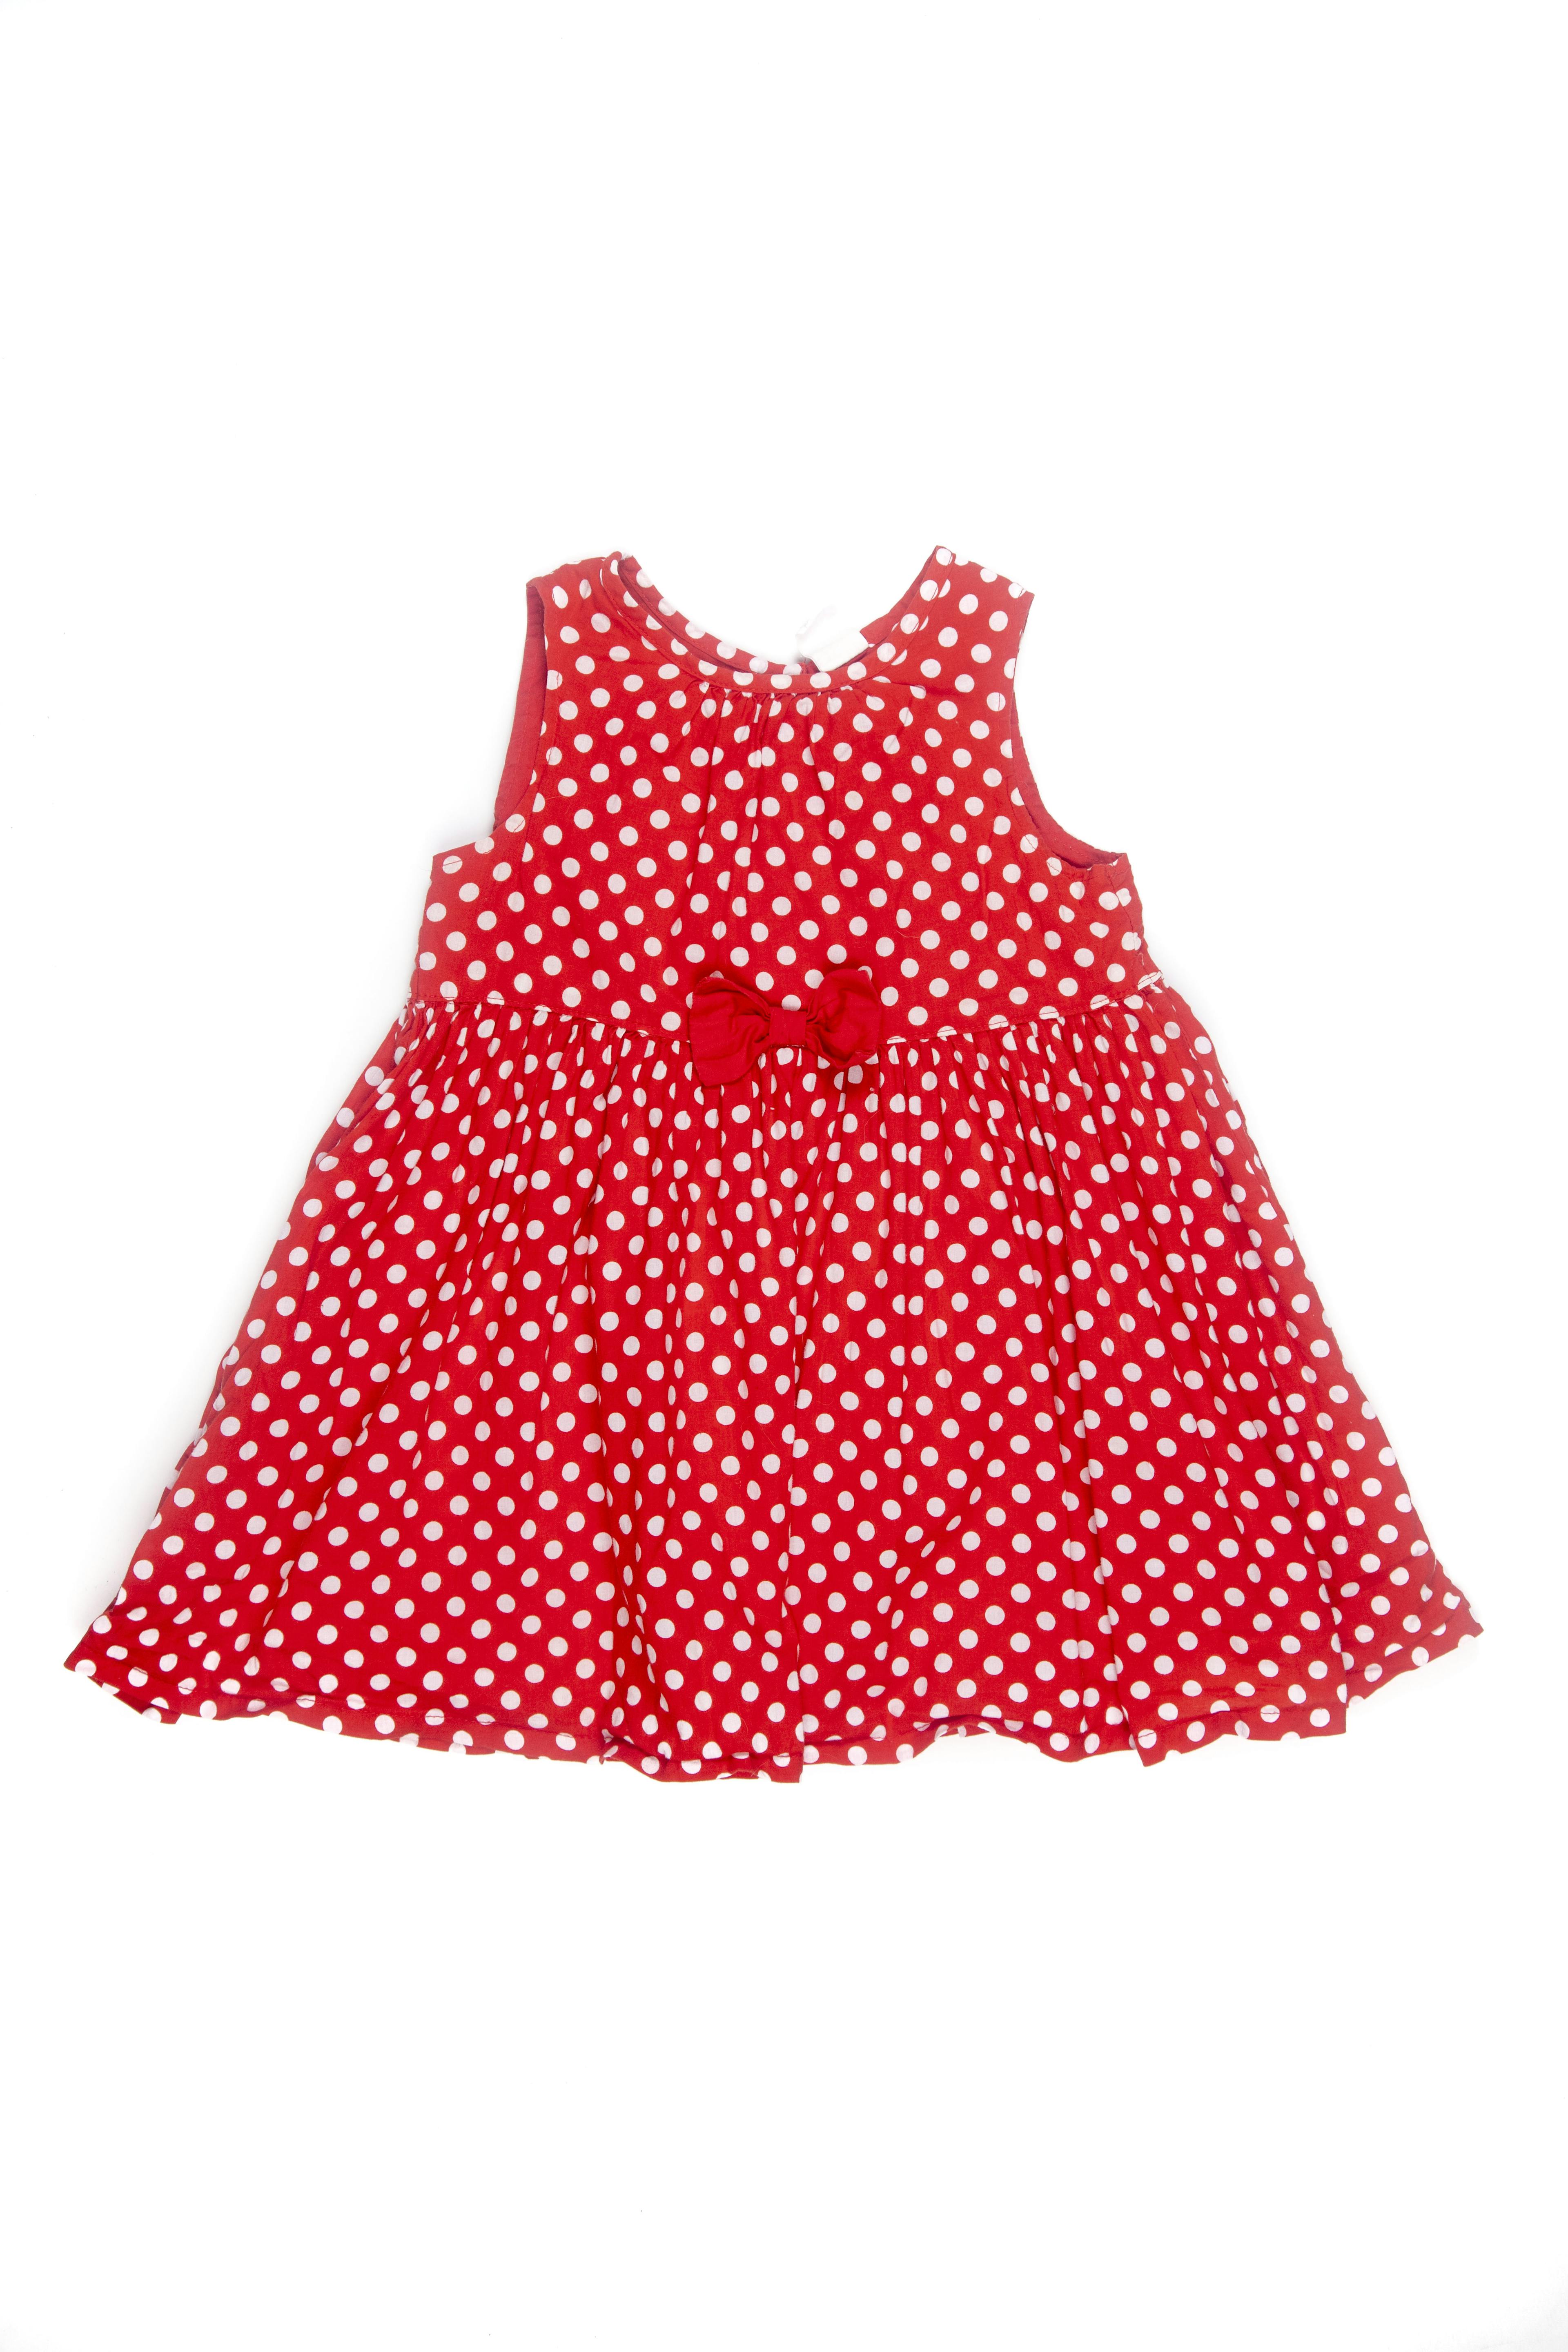 Vestido rojo con puntos blancos, forro en parte superior. 100% algodón - H & M